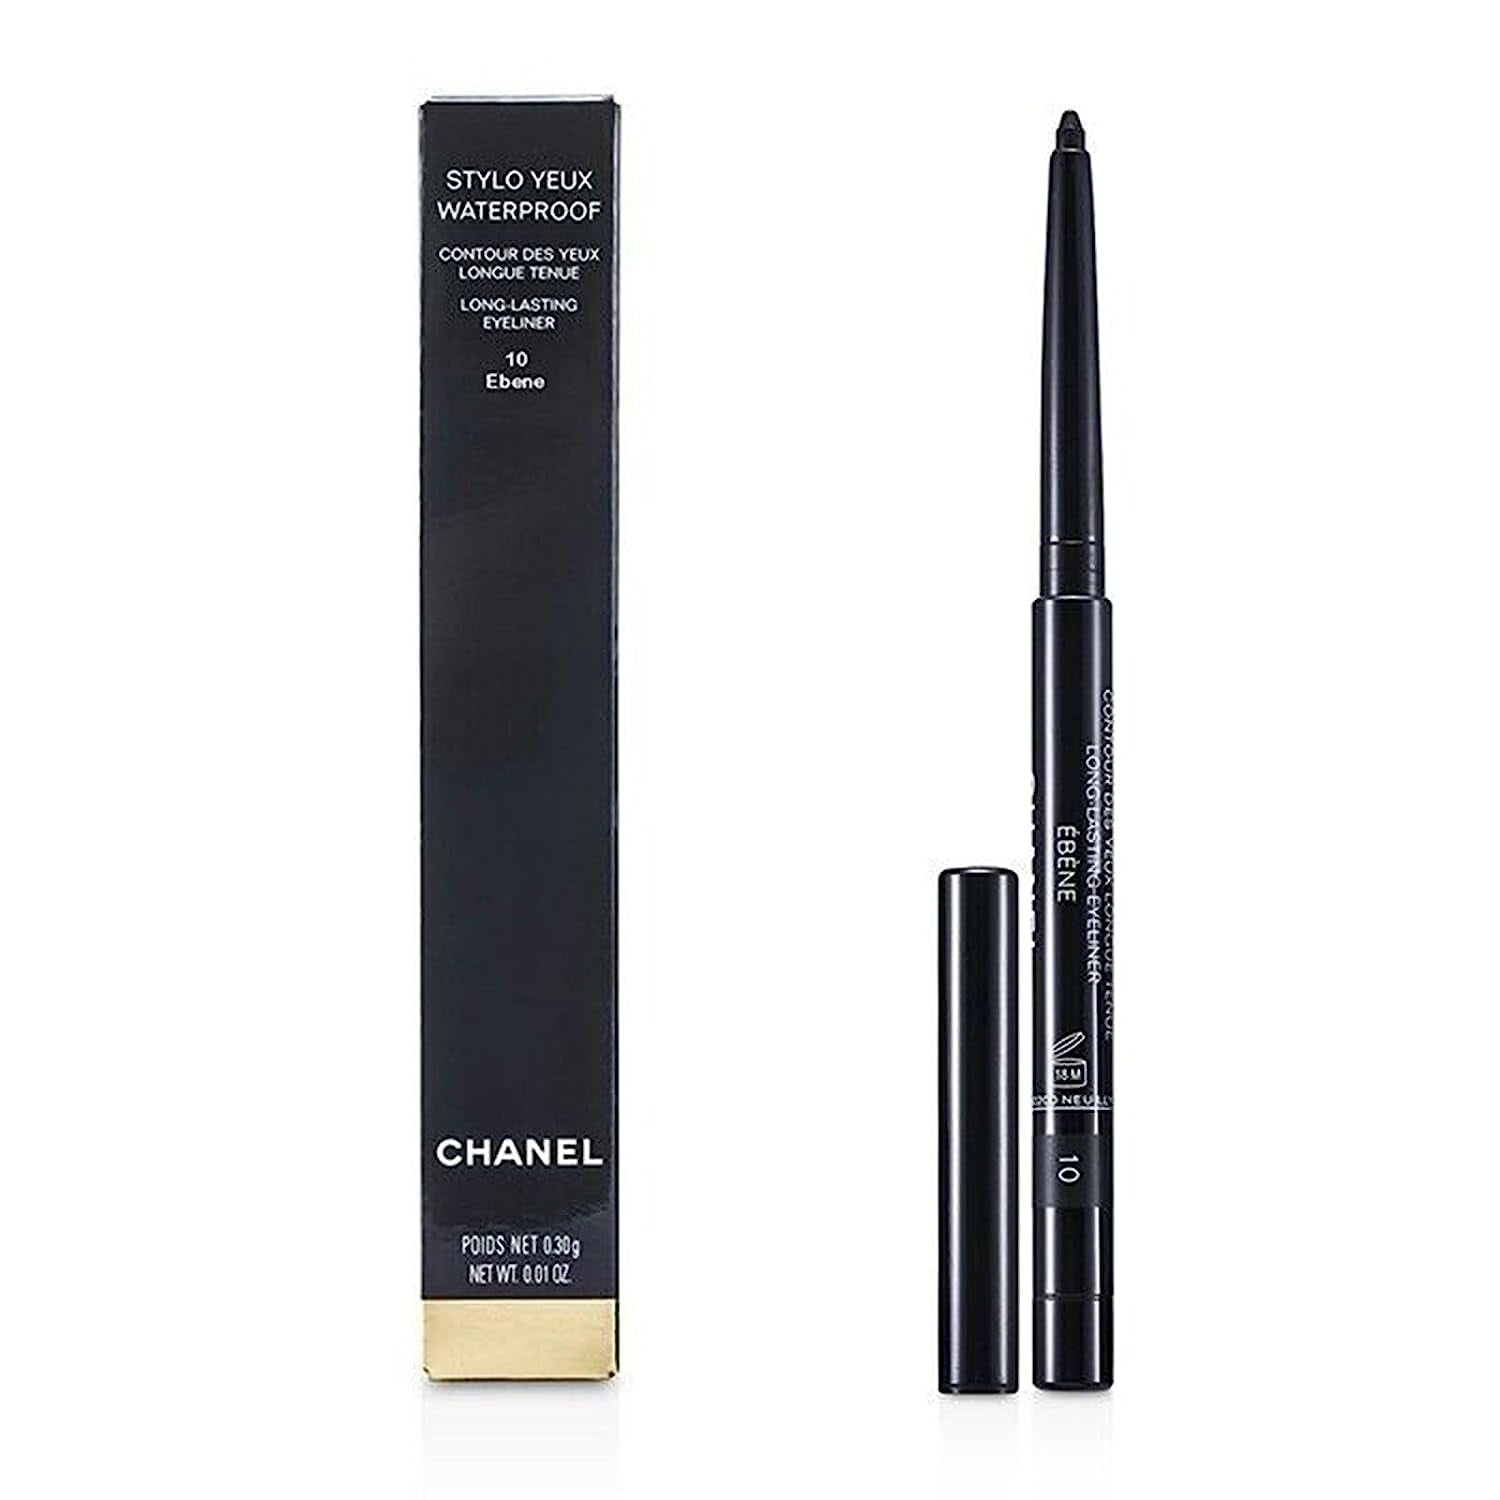 Chanel  STYLO YEUX WATERPROOF Longwear Eyeliner And Kohl Pencil